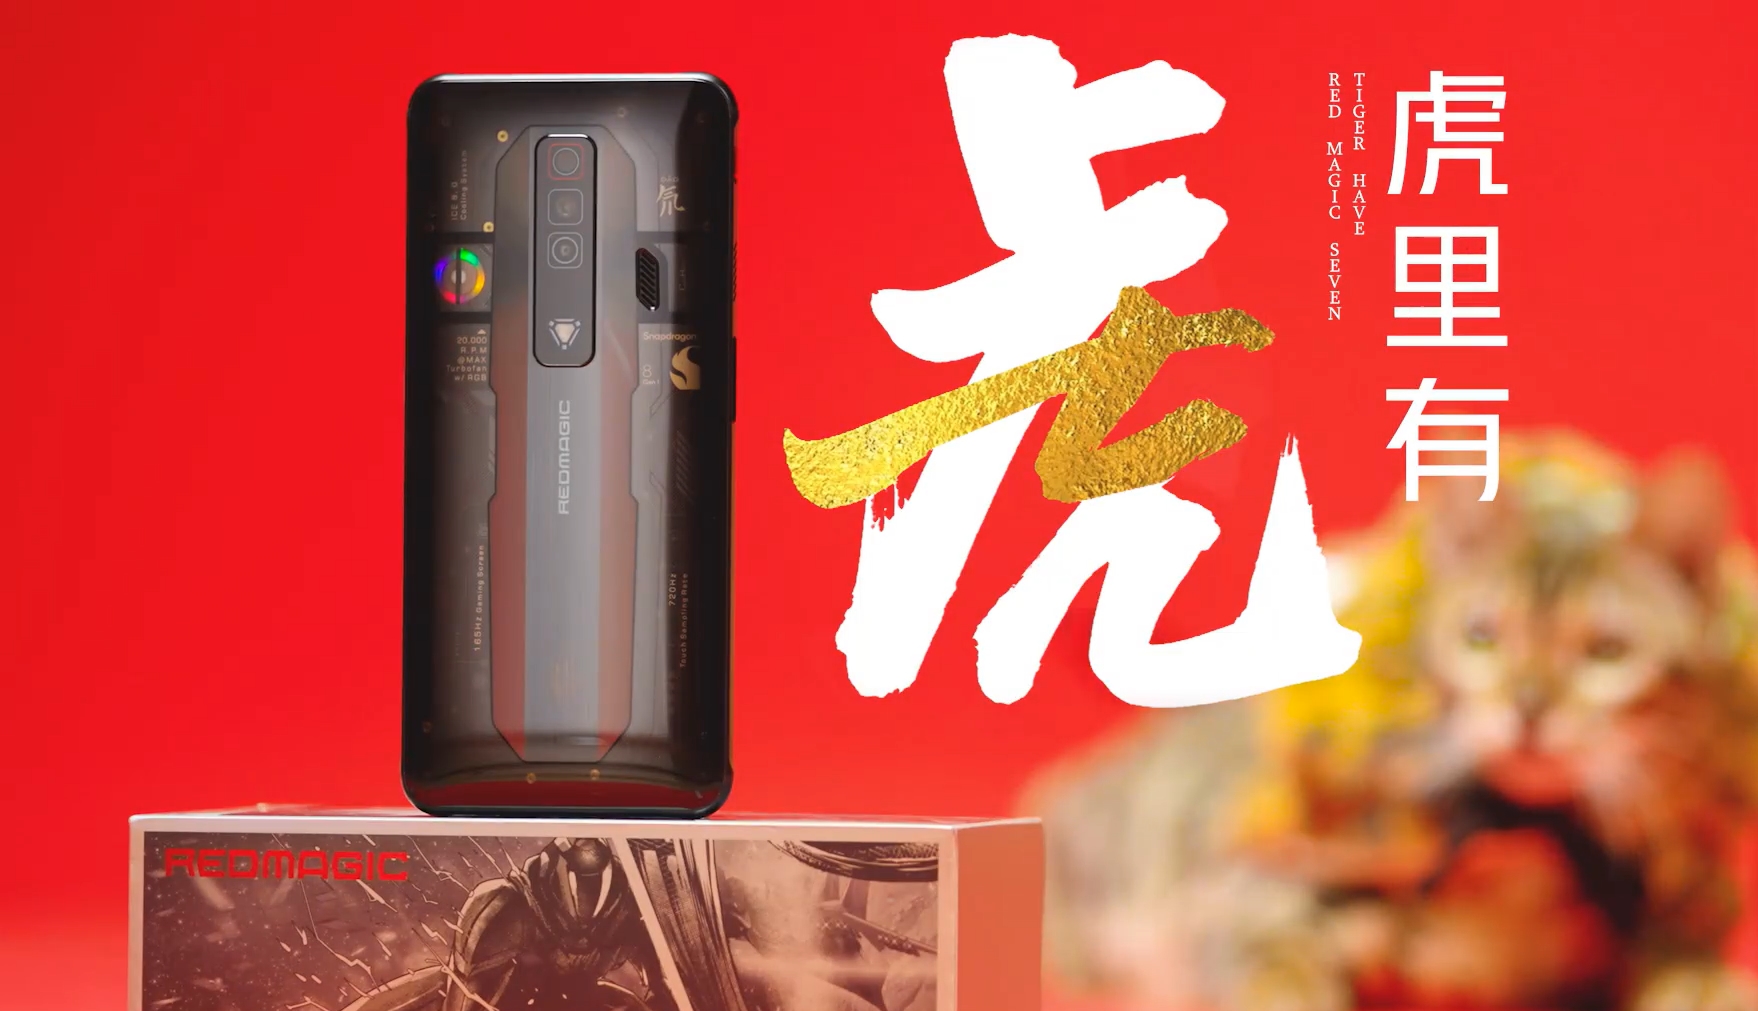 Panel trasero transparente y triple cámara: Nubia mostró el teléfono inteligente para juegos Red Magic 7 antes del anuncio